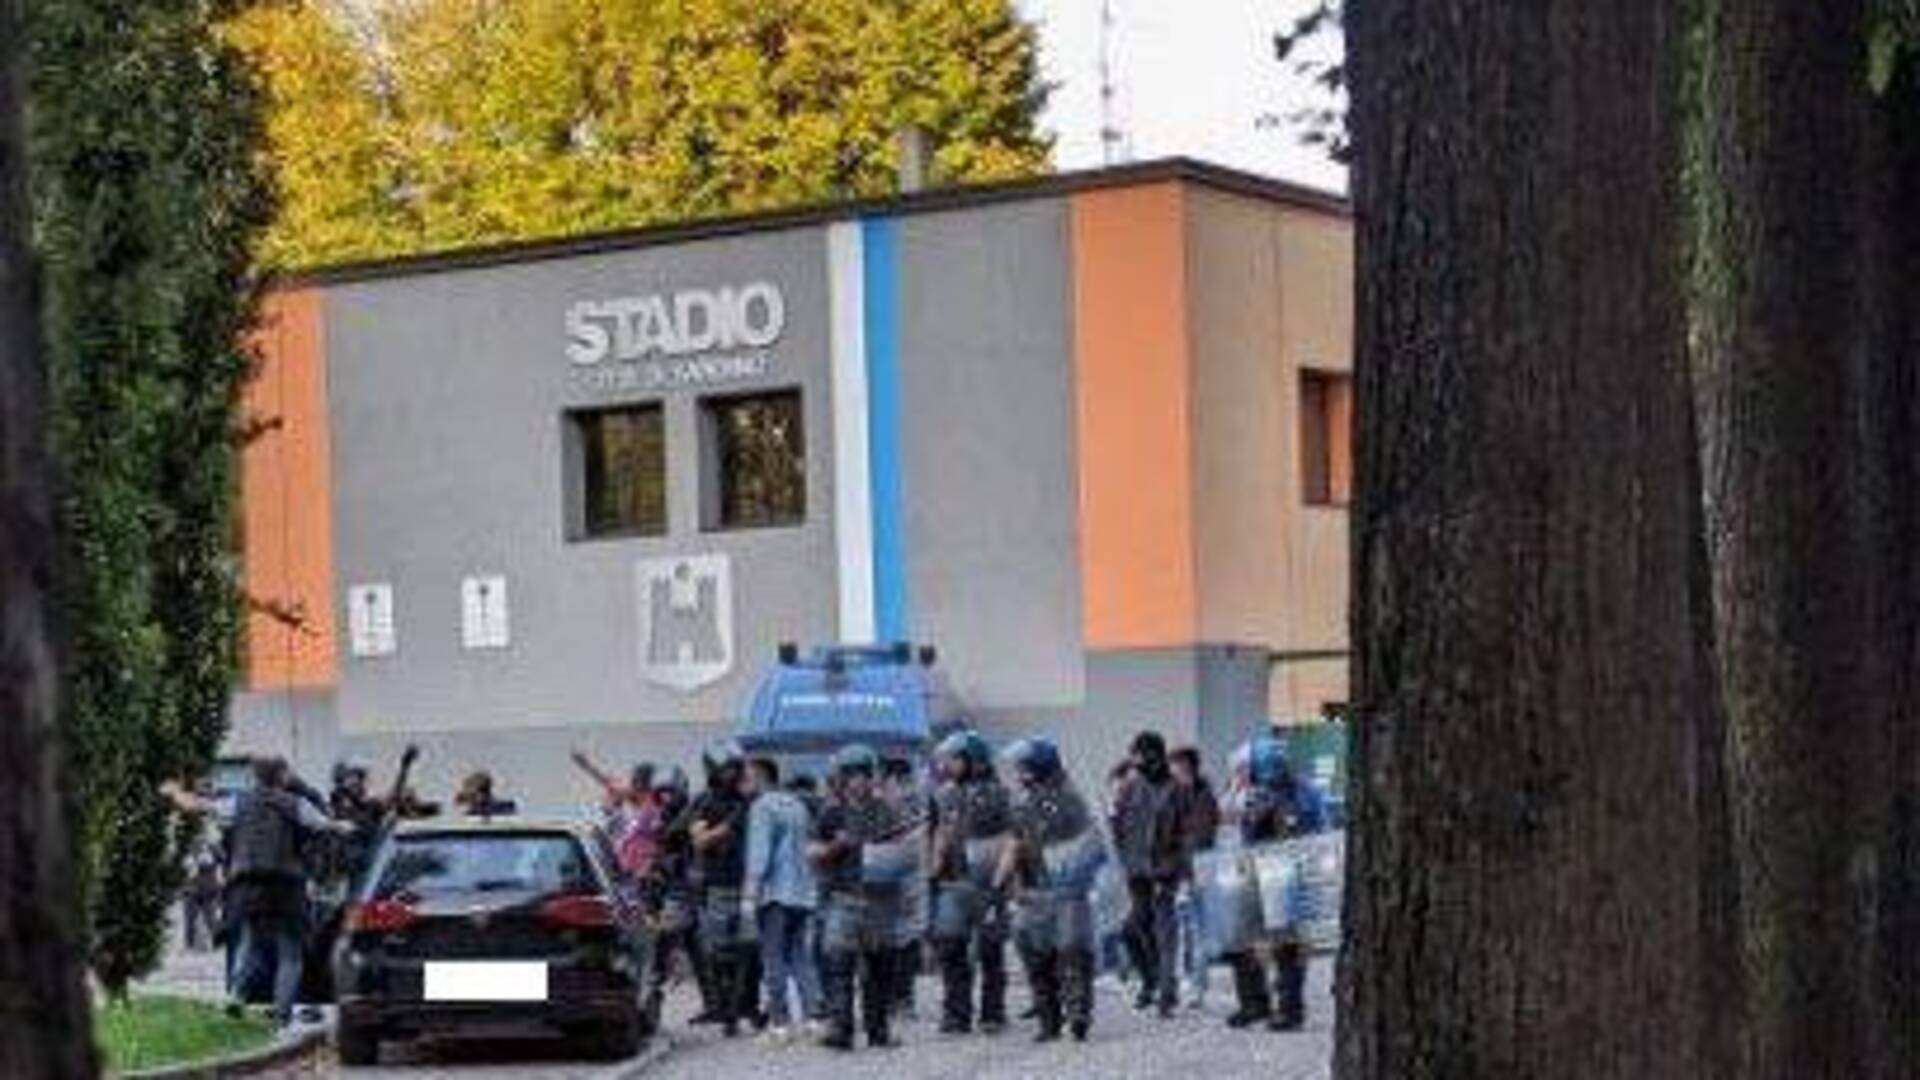 Saronno, tensione fuori dallo stadio: lancio oggetti, cori e bomba carta a Fbc Saronno – Pavia